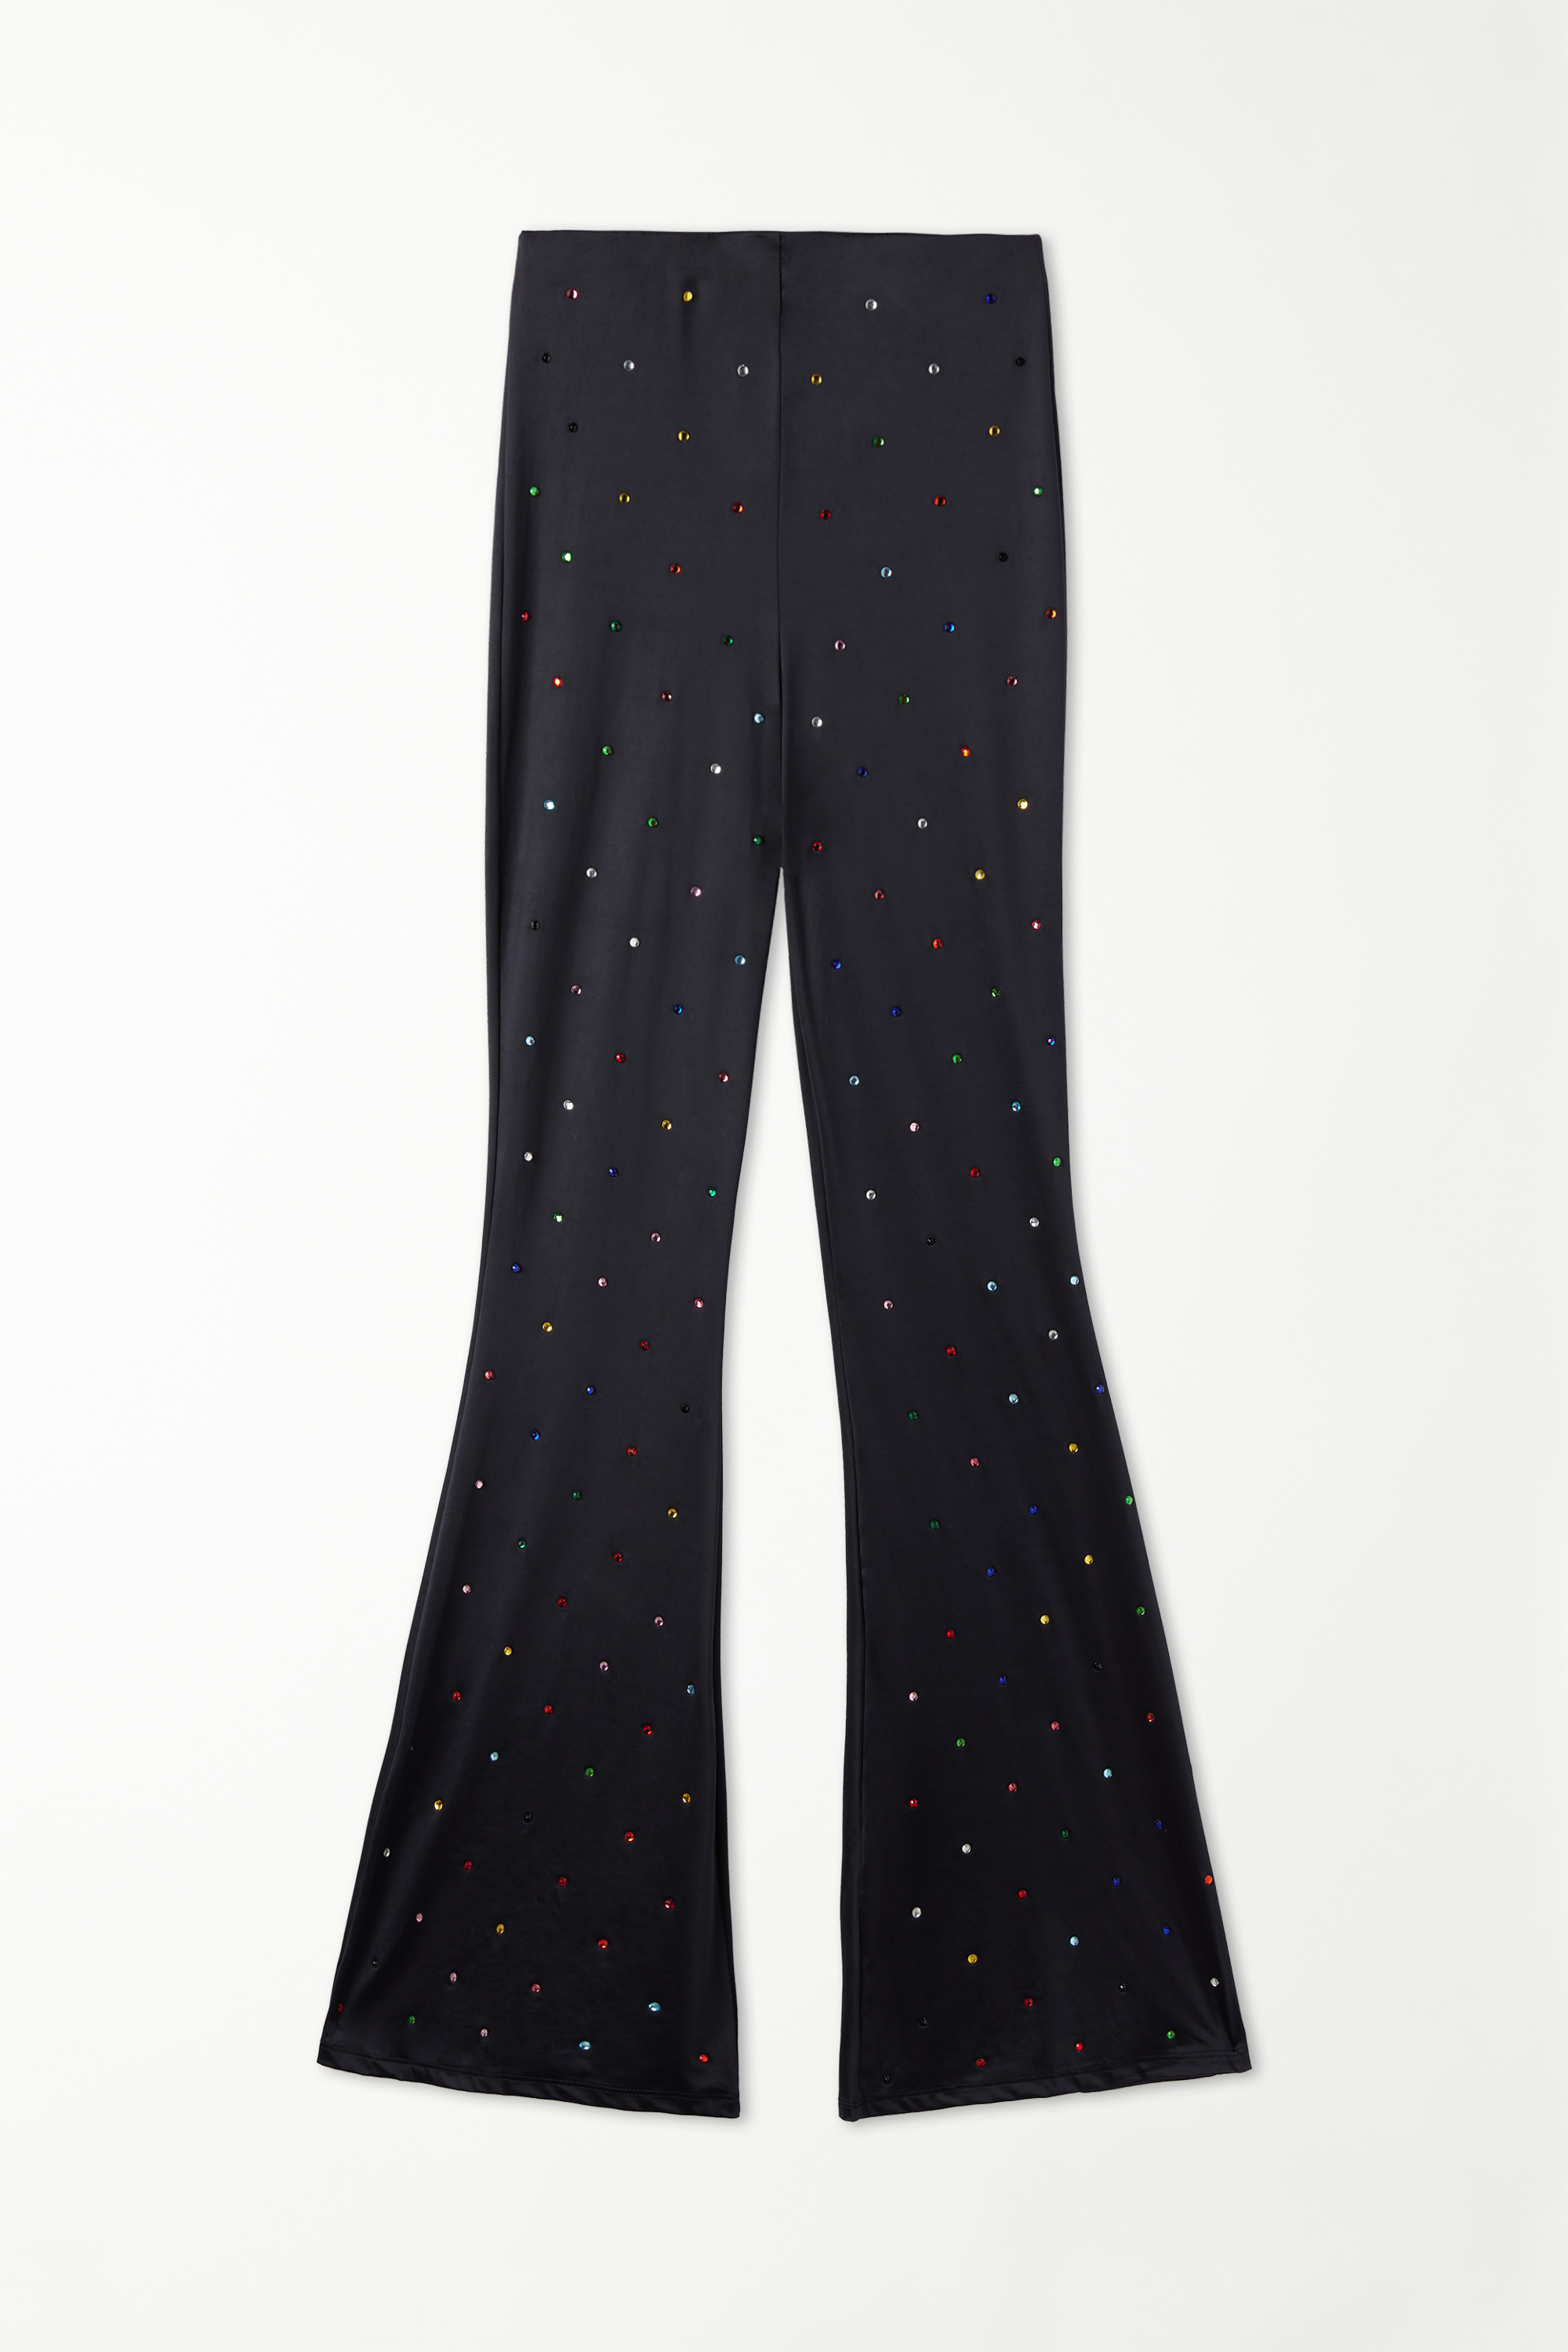 Pantaloni Lunghi Microfibra Strass Colorati Limited Edition